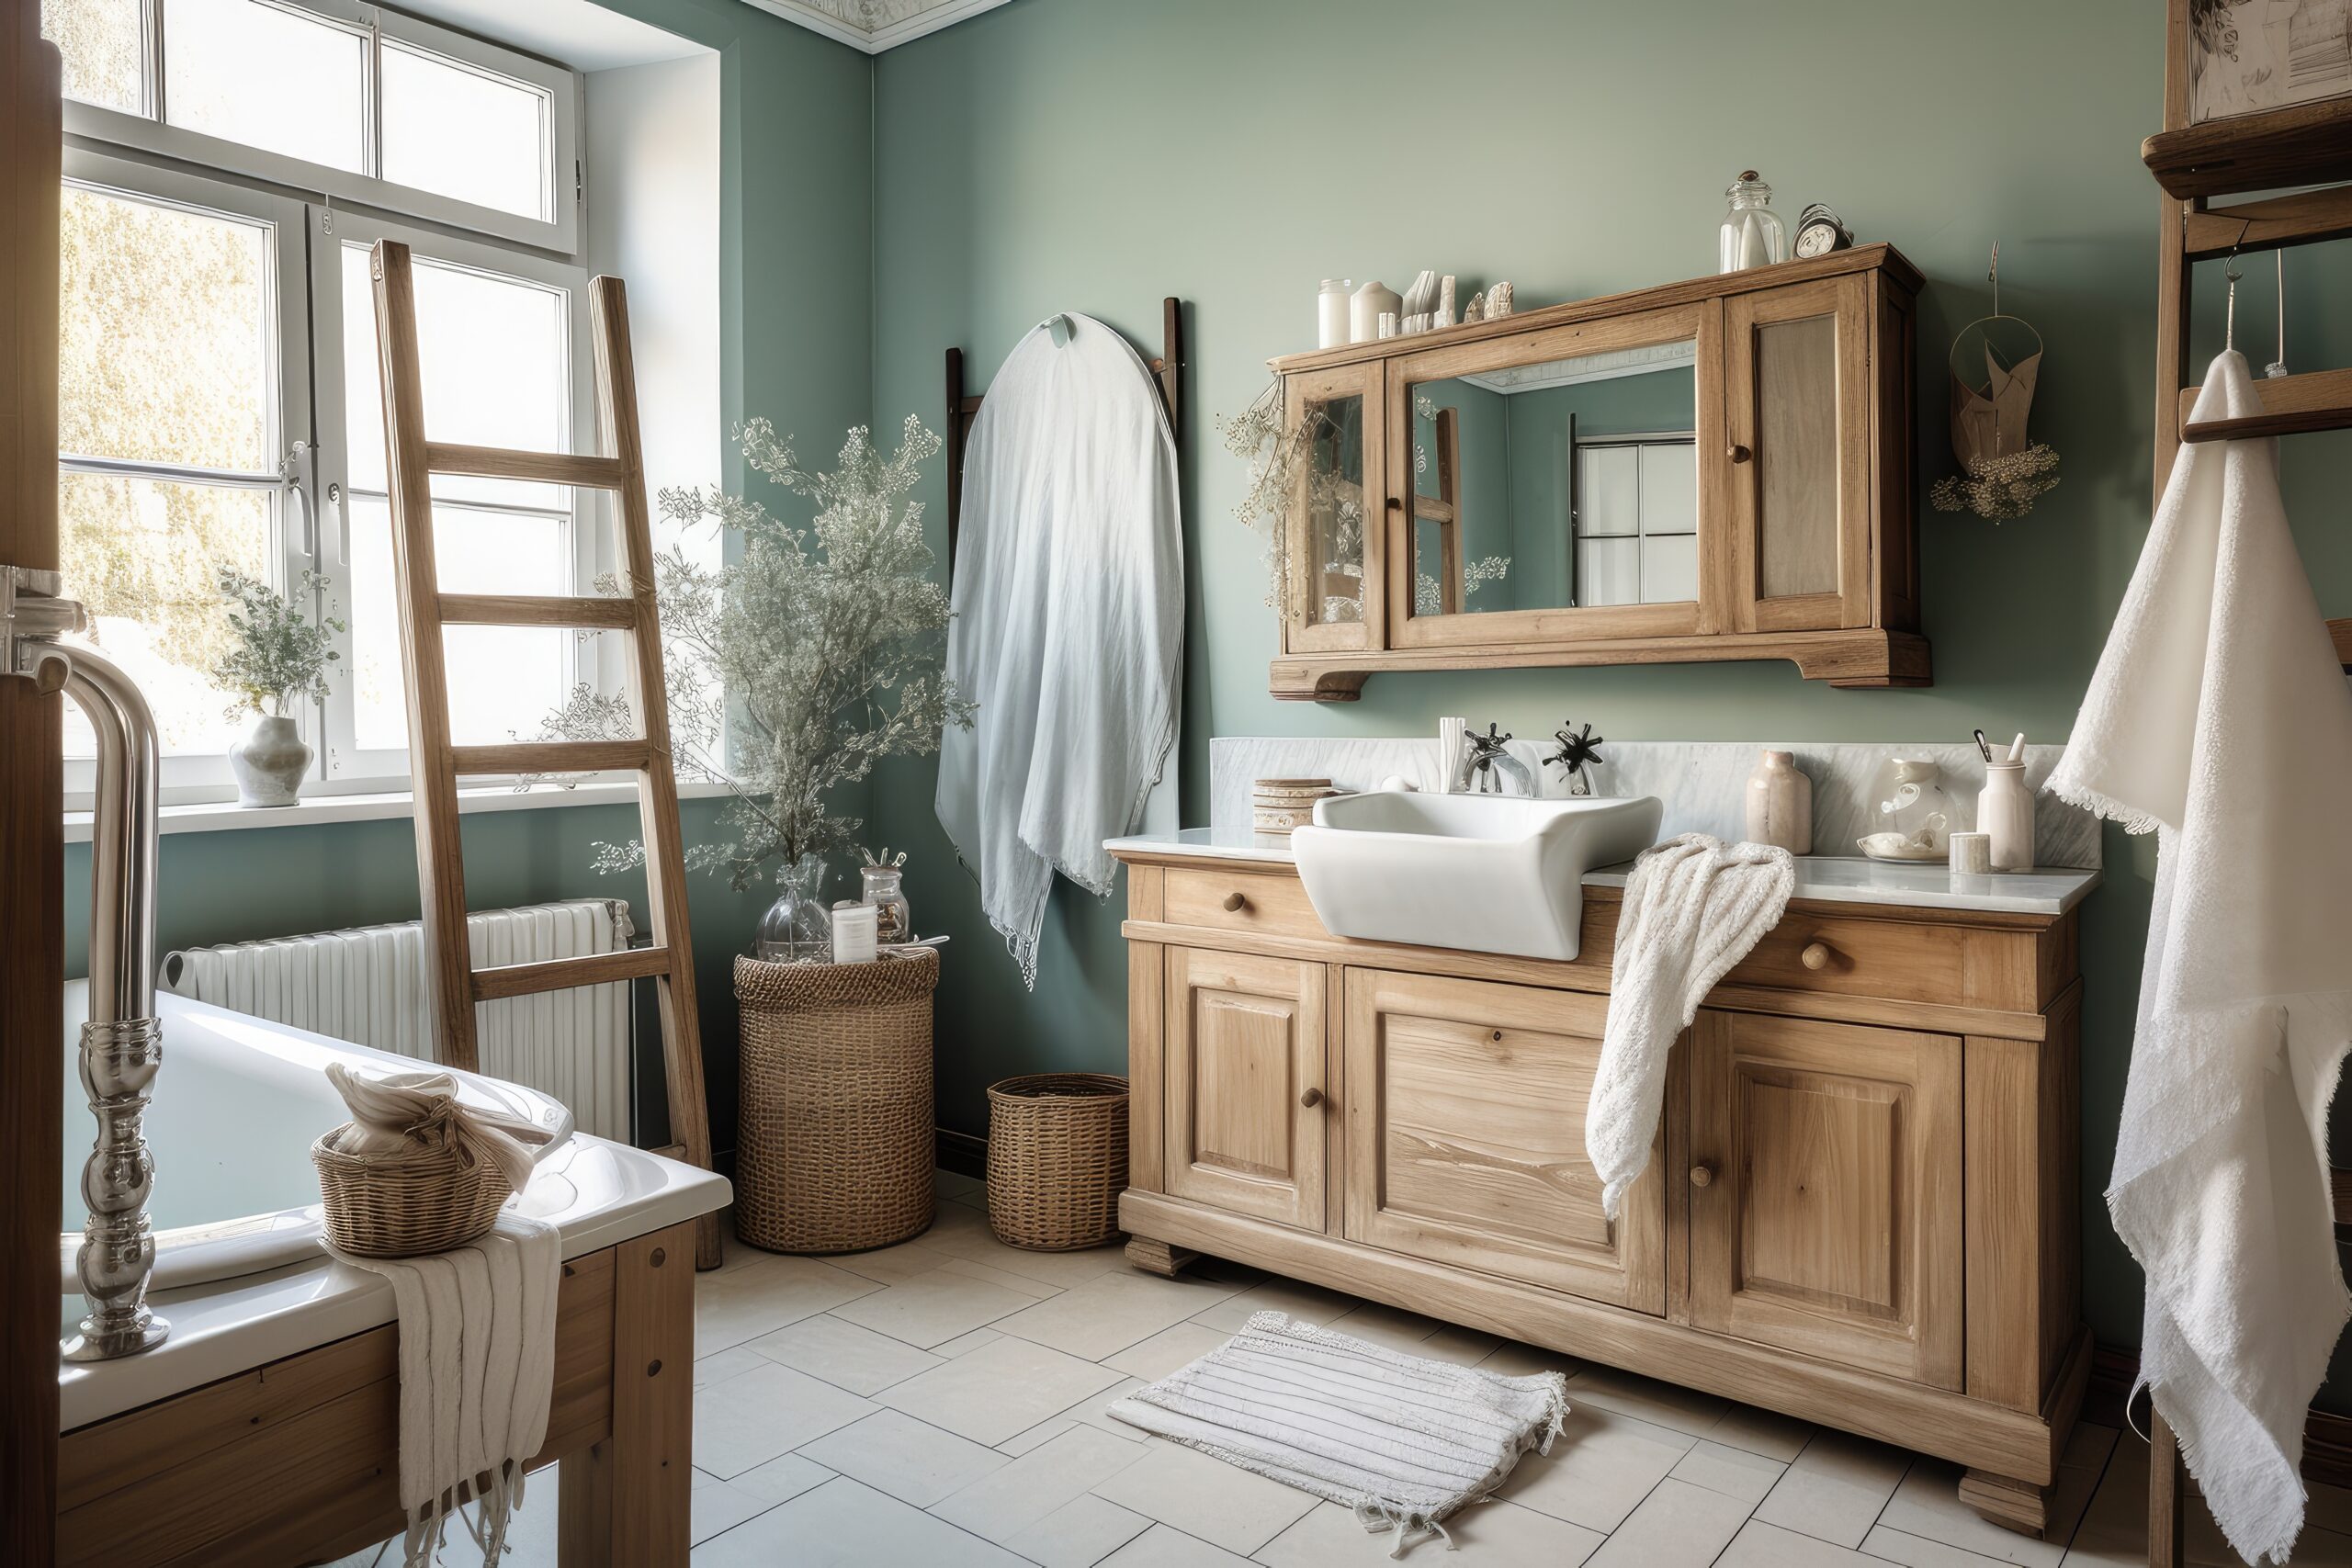 Salle de bains shabby chic avec vanité en bois, luminaires métalliques et serviettes luxueuses